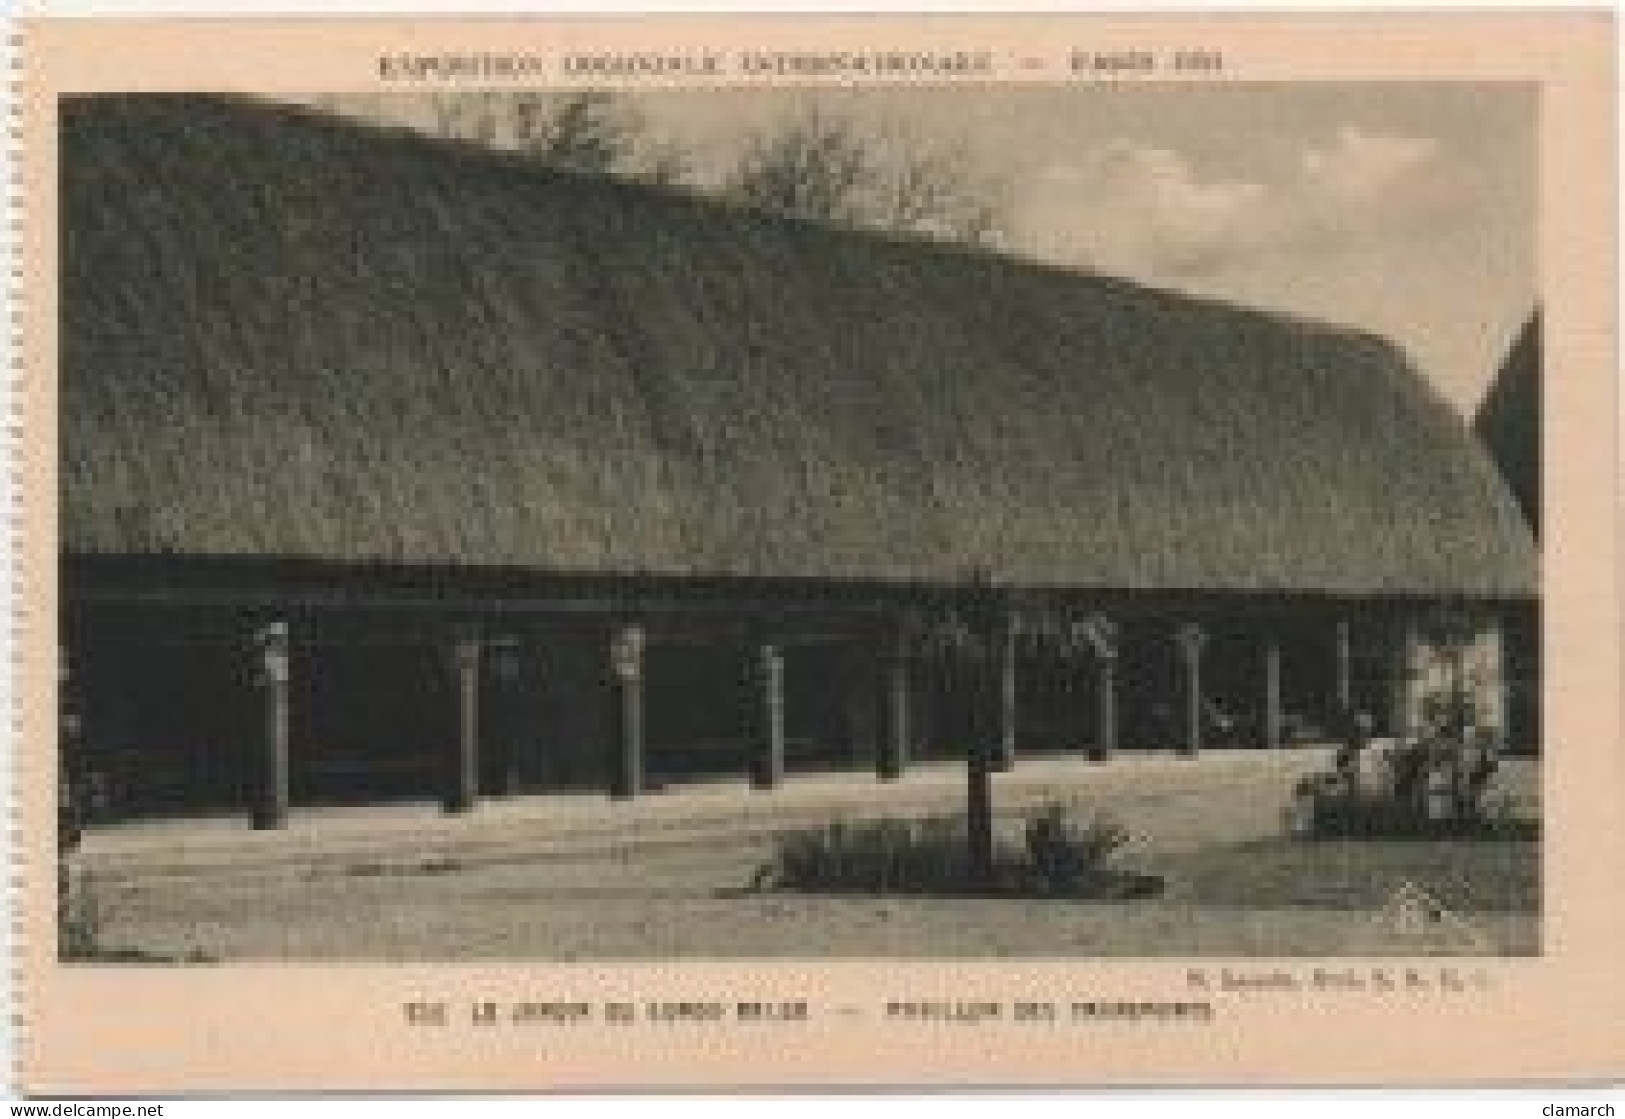 LOT de 124 CPSM de PARIS Exposition Coloniale de 1931-Toutes différentes-BE- frais d'envoi pour la F 6.30